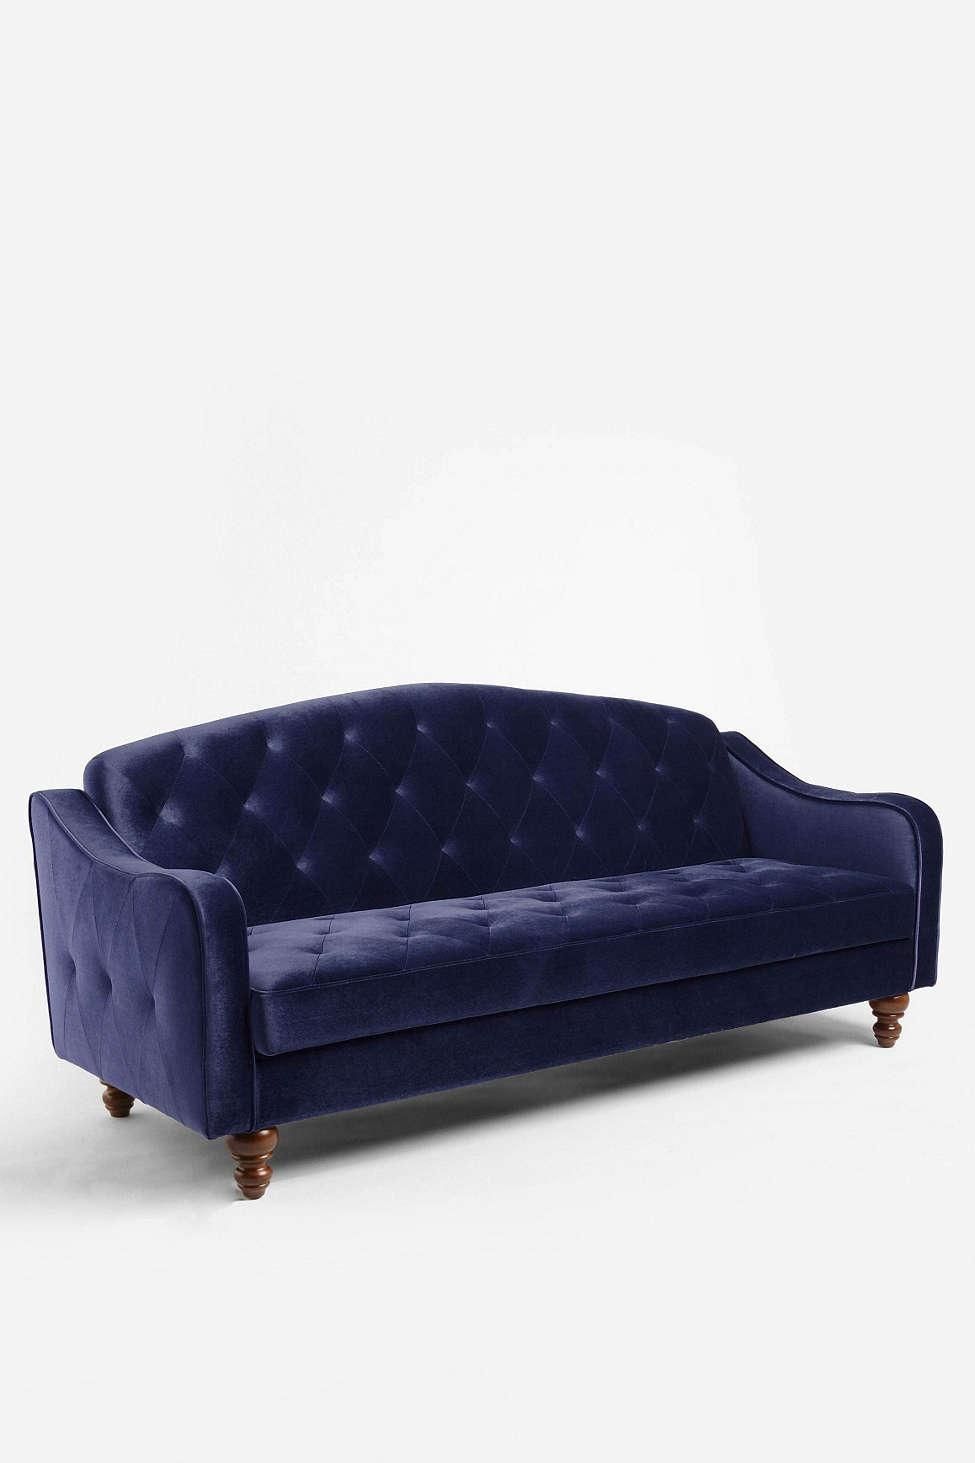 Velvet Tufted Sofa Sleeper : Repairing Velvet Tufted Sofa – Home Intended For Blue Velvet Tufted Sofas (View 16 of 20)